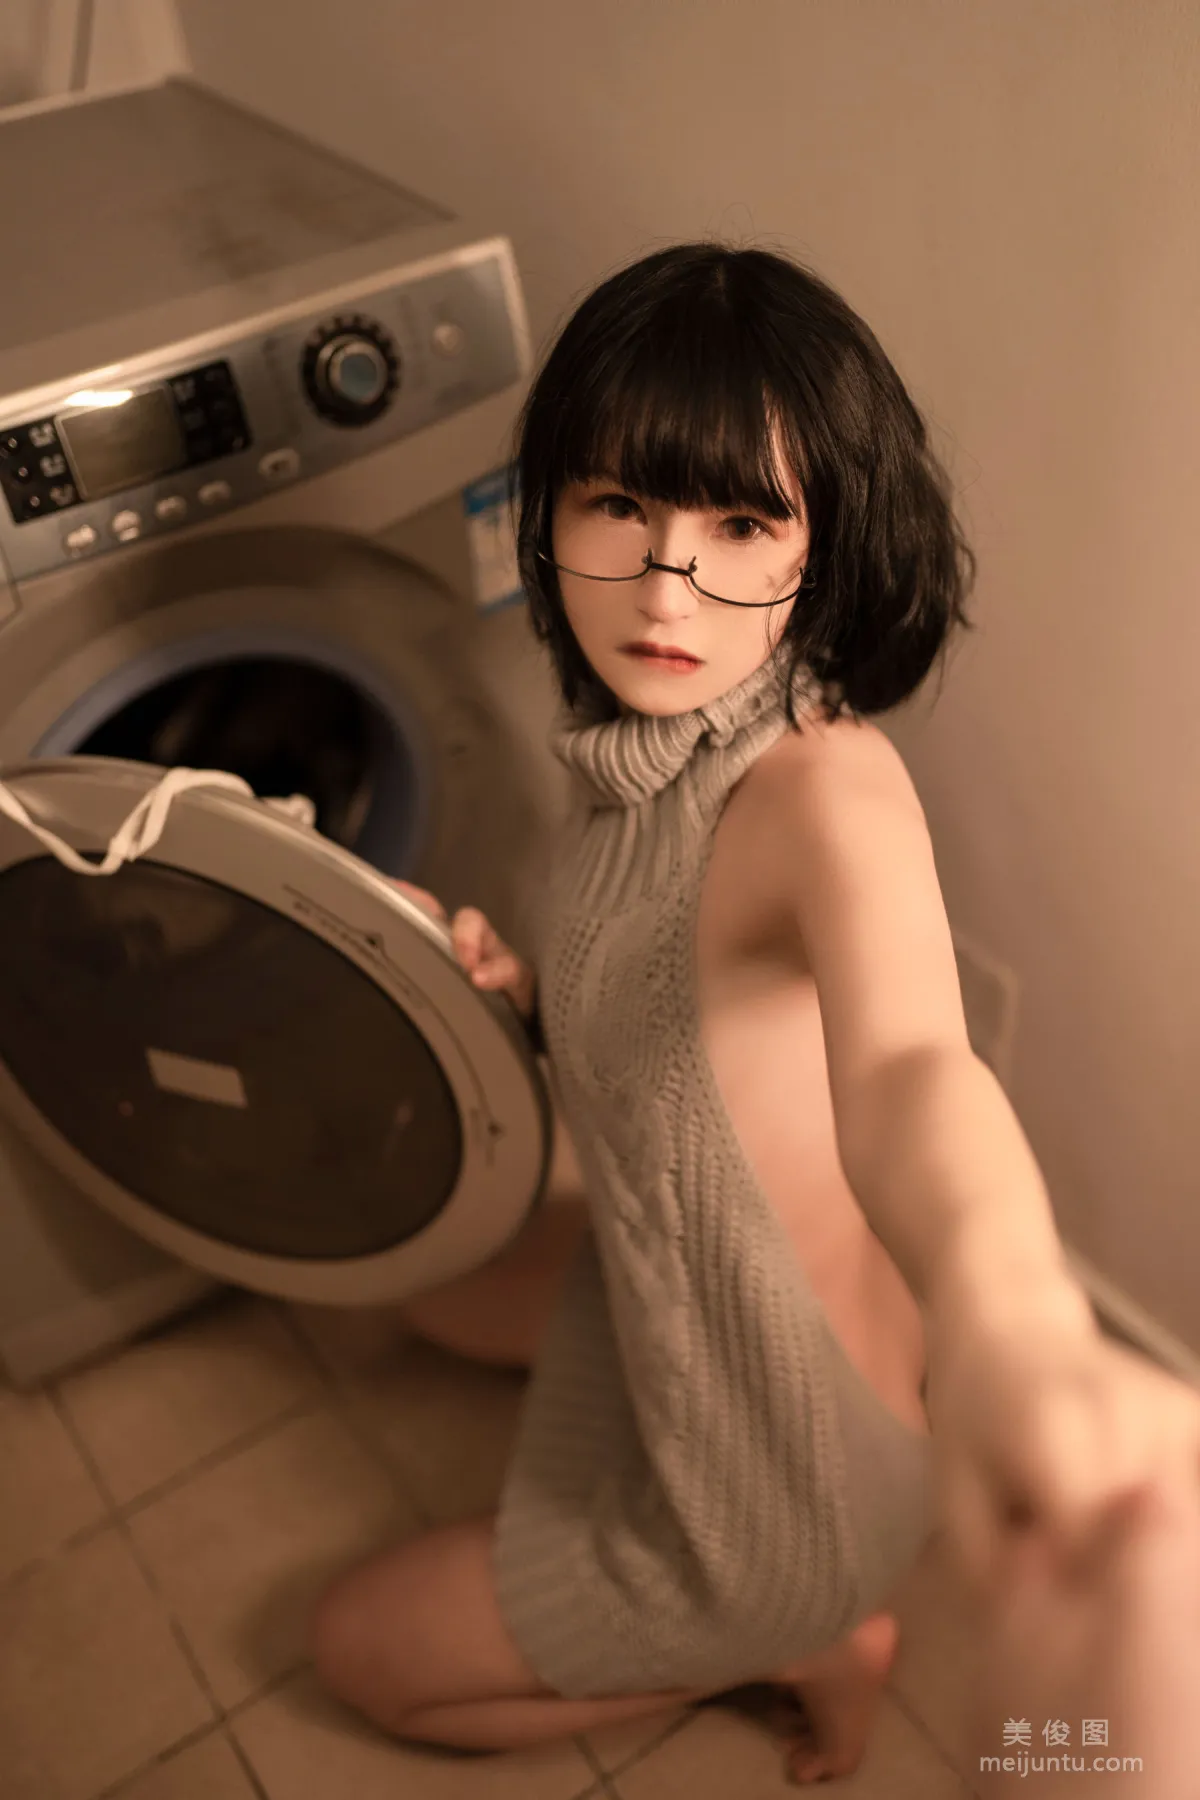 美少女晕崽 - 维修洗衣机 写真套图39